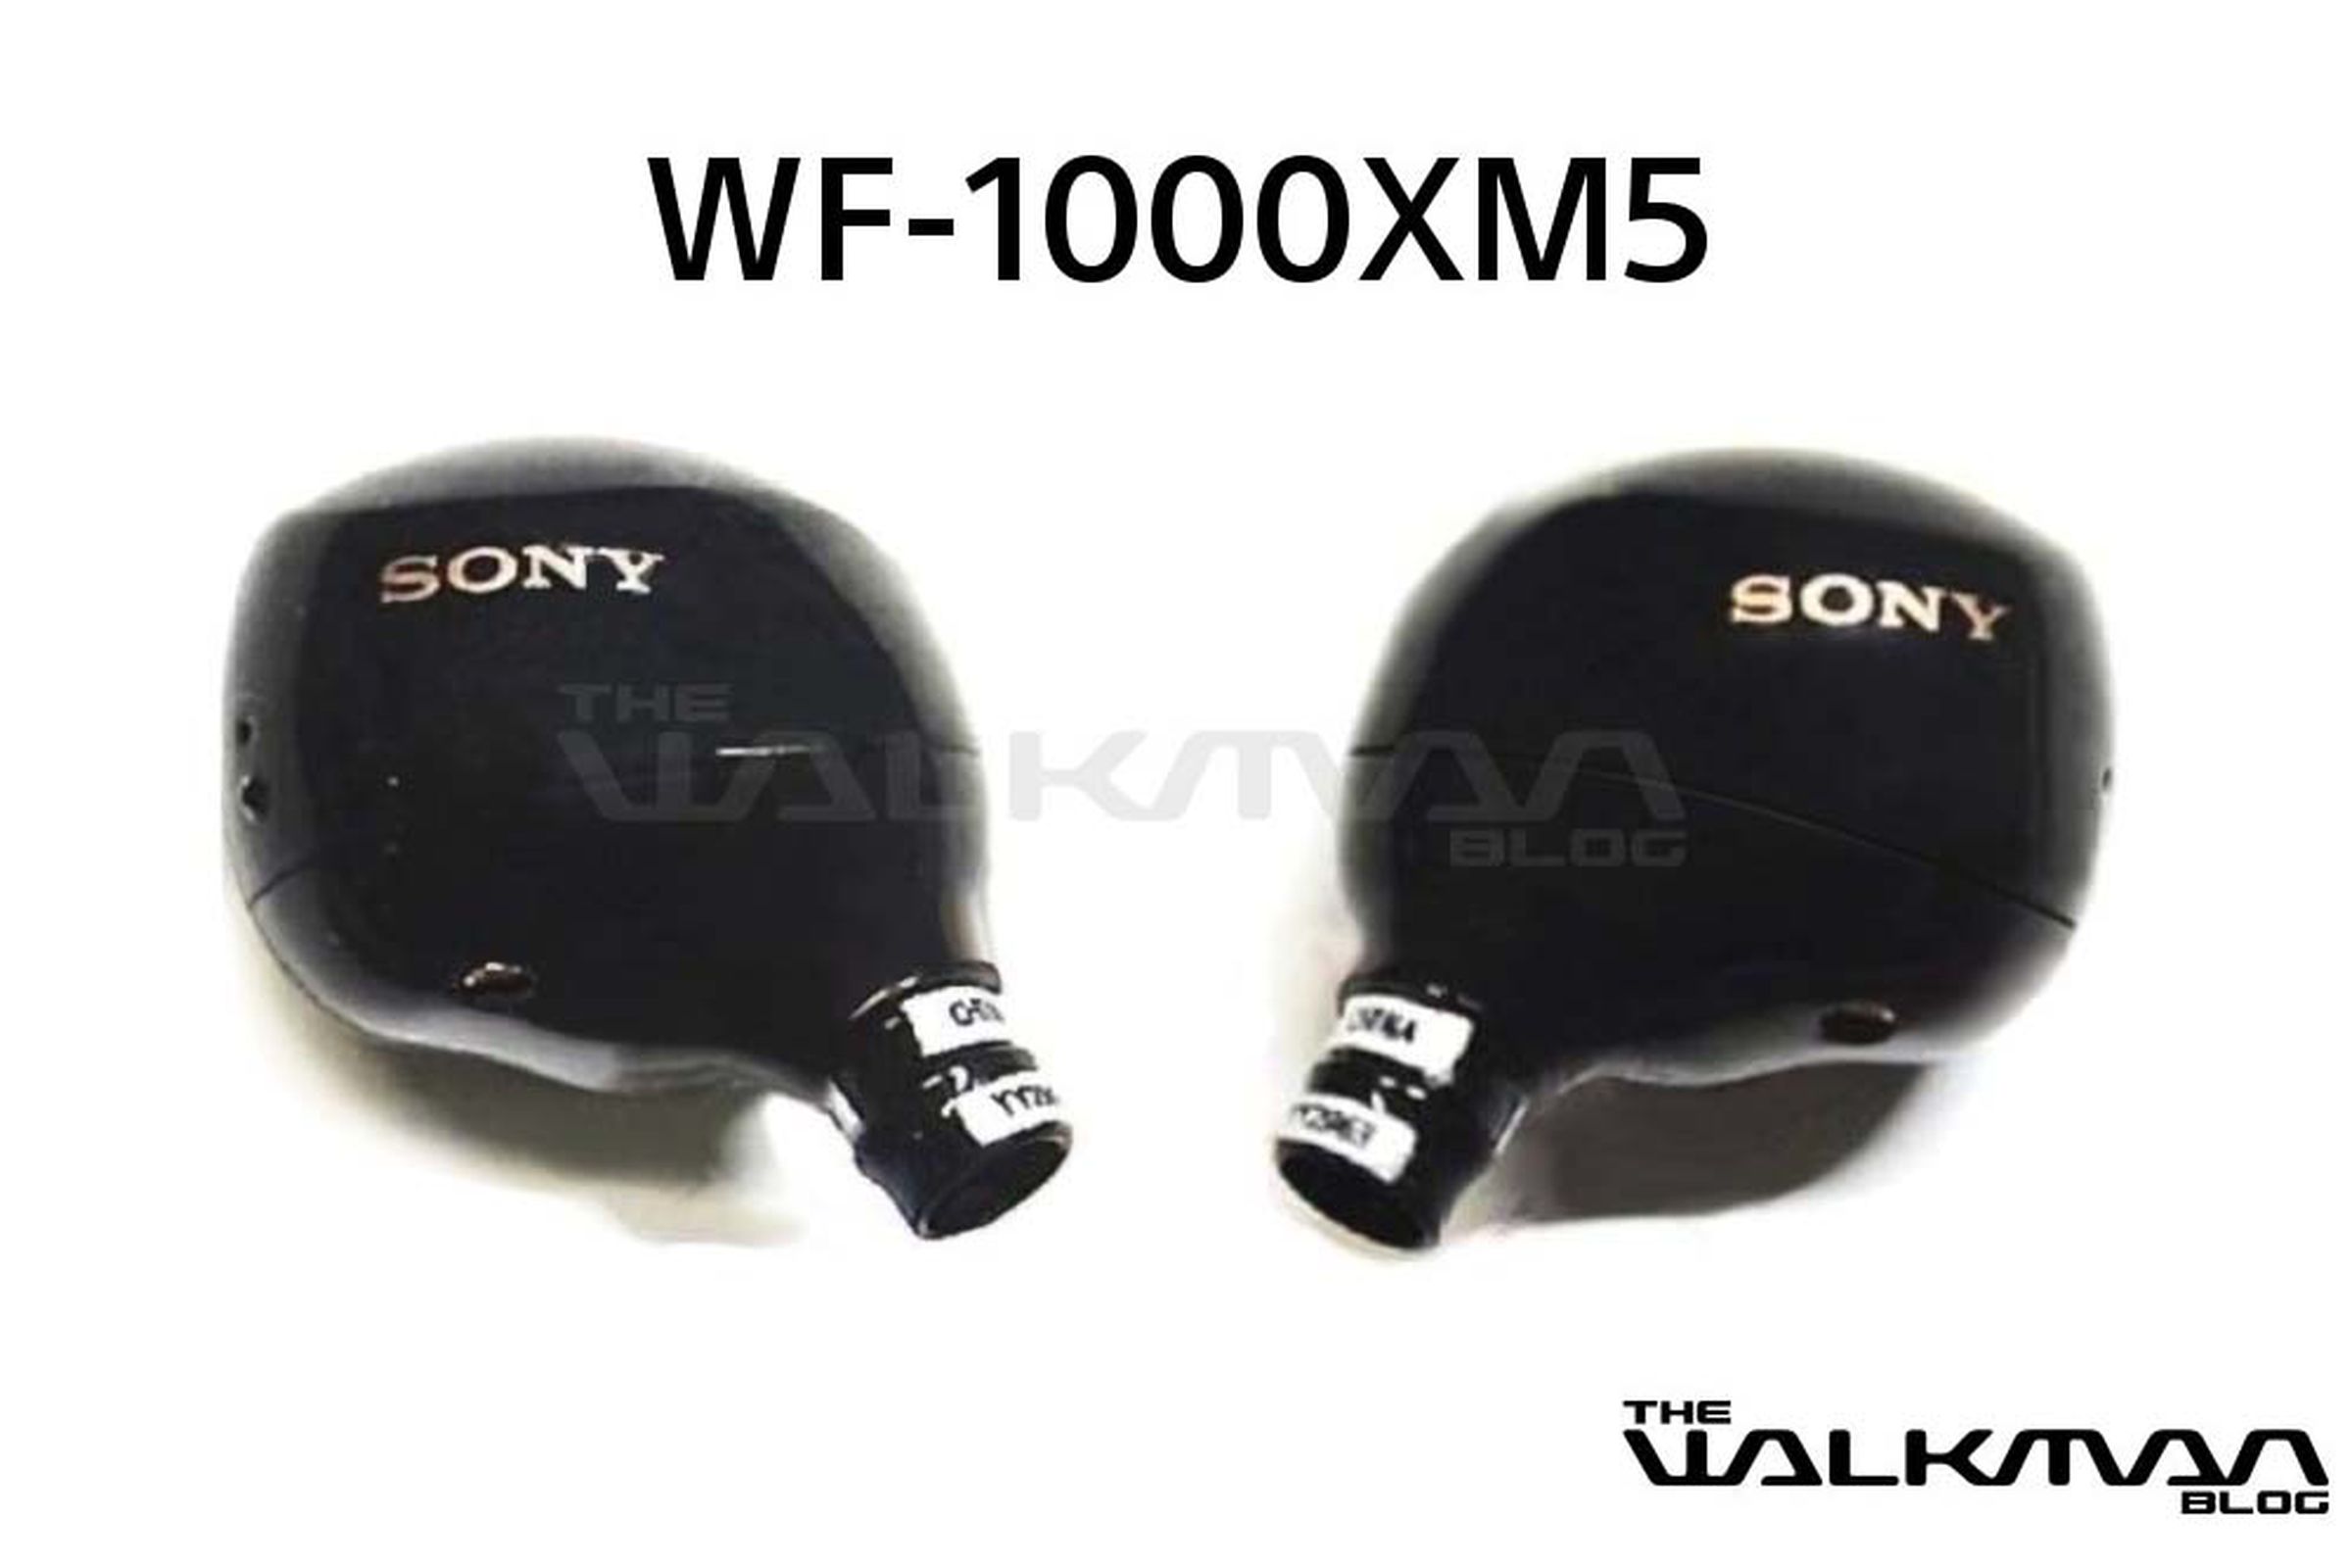 Two Sony WF-1000XM5 earbuds.